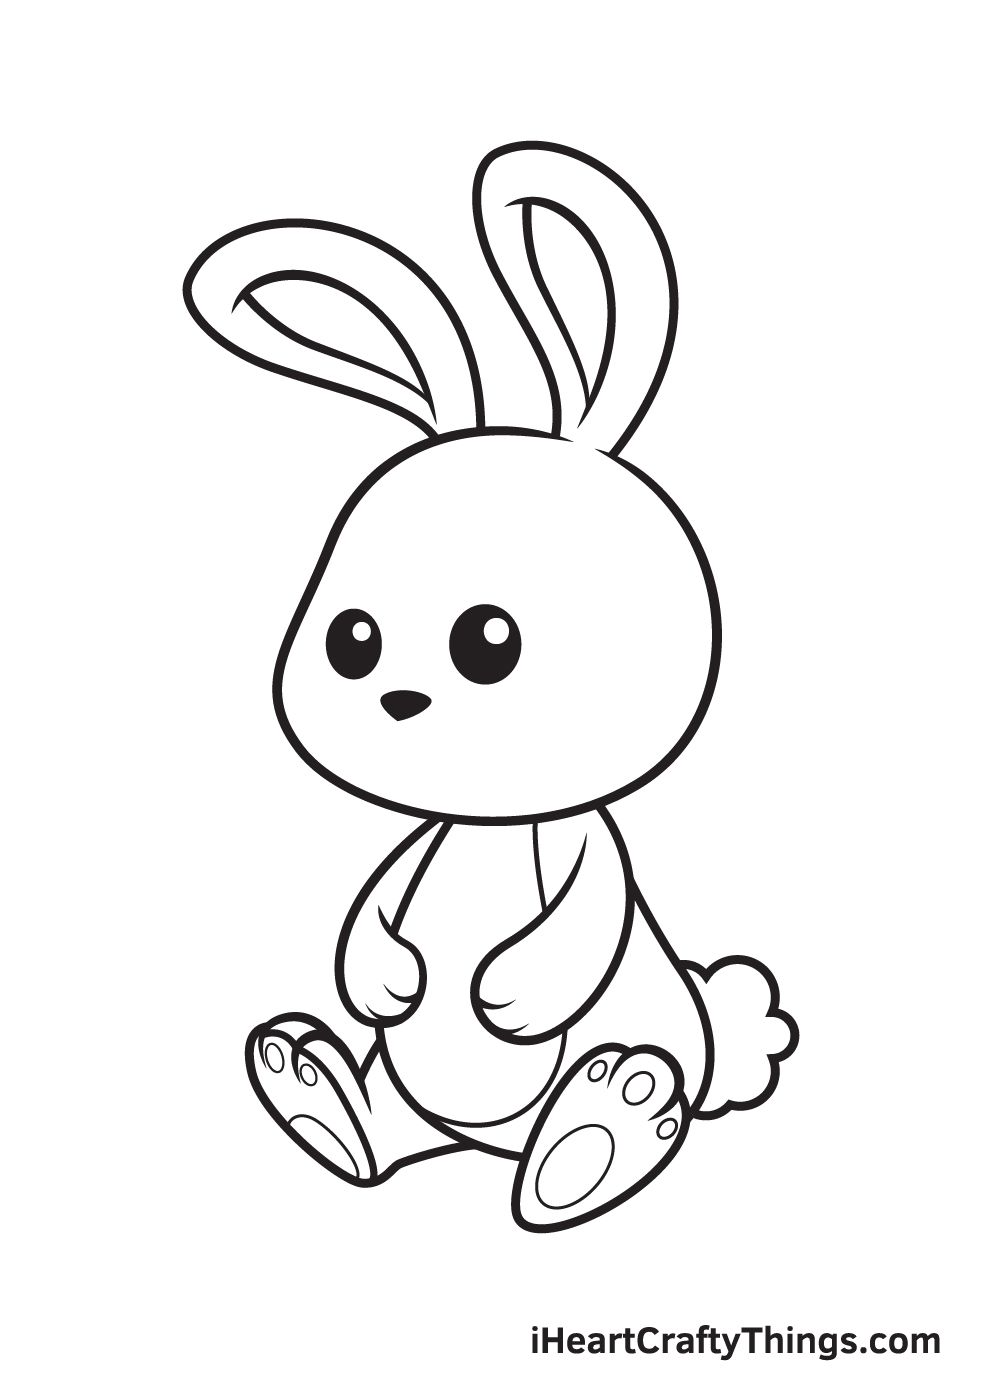 Vẽ chú thỏ - Bước 8